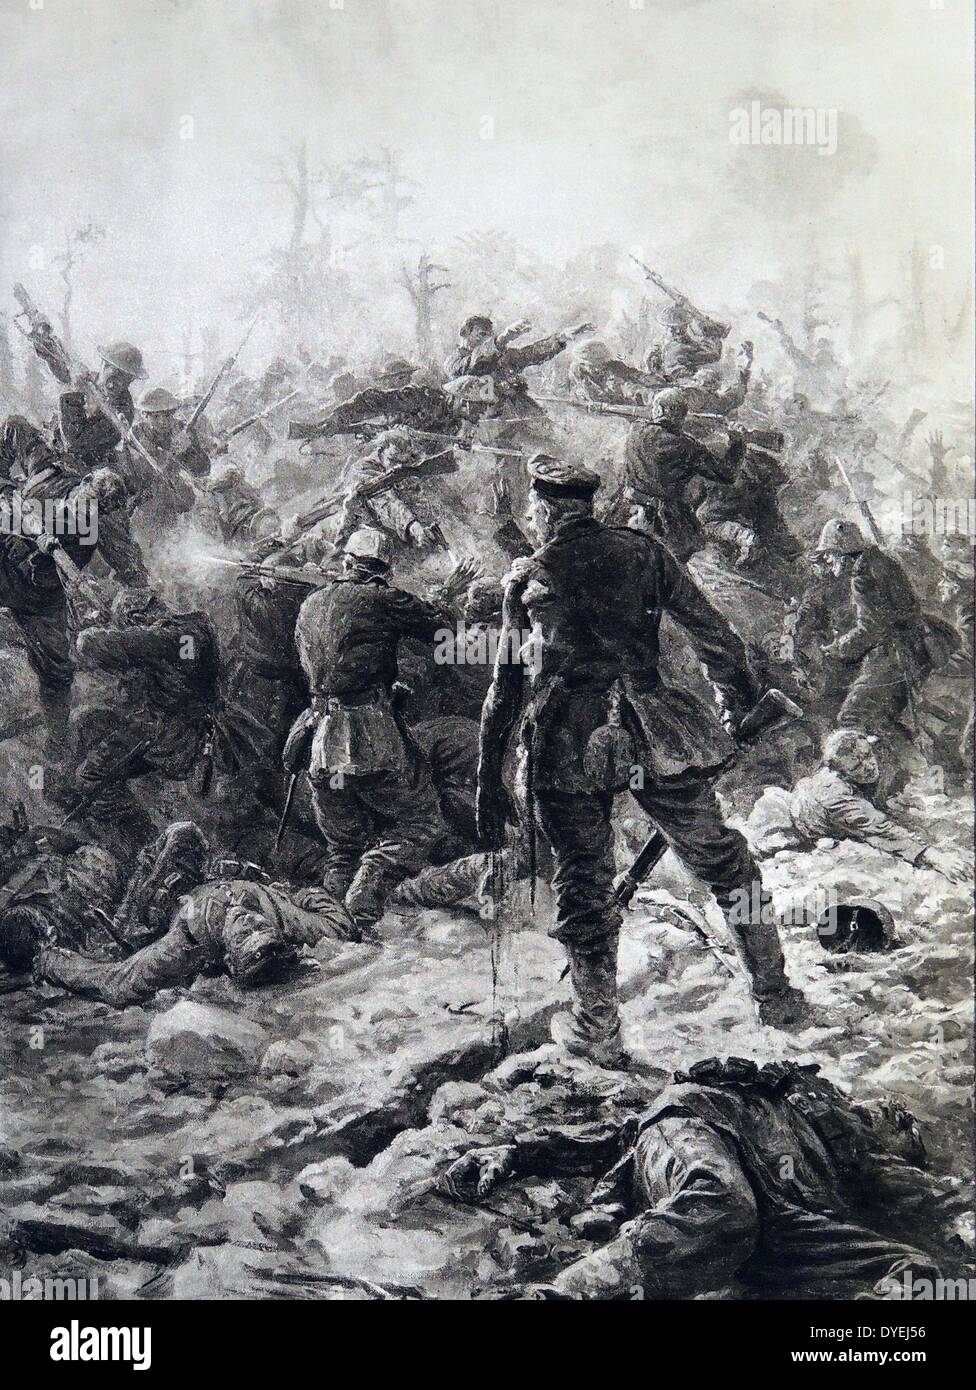 Weltkrieg 1 - Schlacht von Devil's Holz - harter Hand zu Hand kämpfen zwischen britischen und deutschen Soldaten. 1916. Die Schlacht von delville Wood 14. Juli - 3. September, war ein Engagement im Jahre 1916 Schlacht an der Somme im Ersten Weltkrieg. Stockfoto